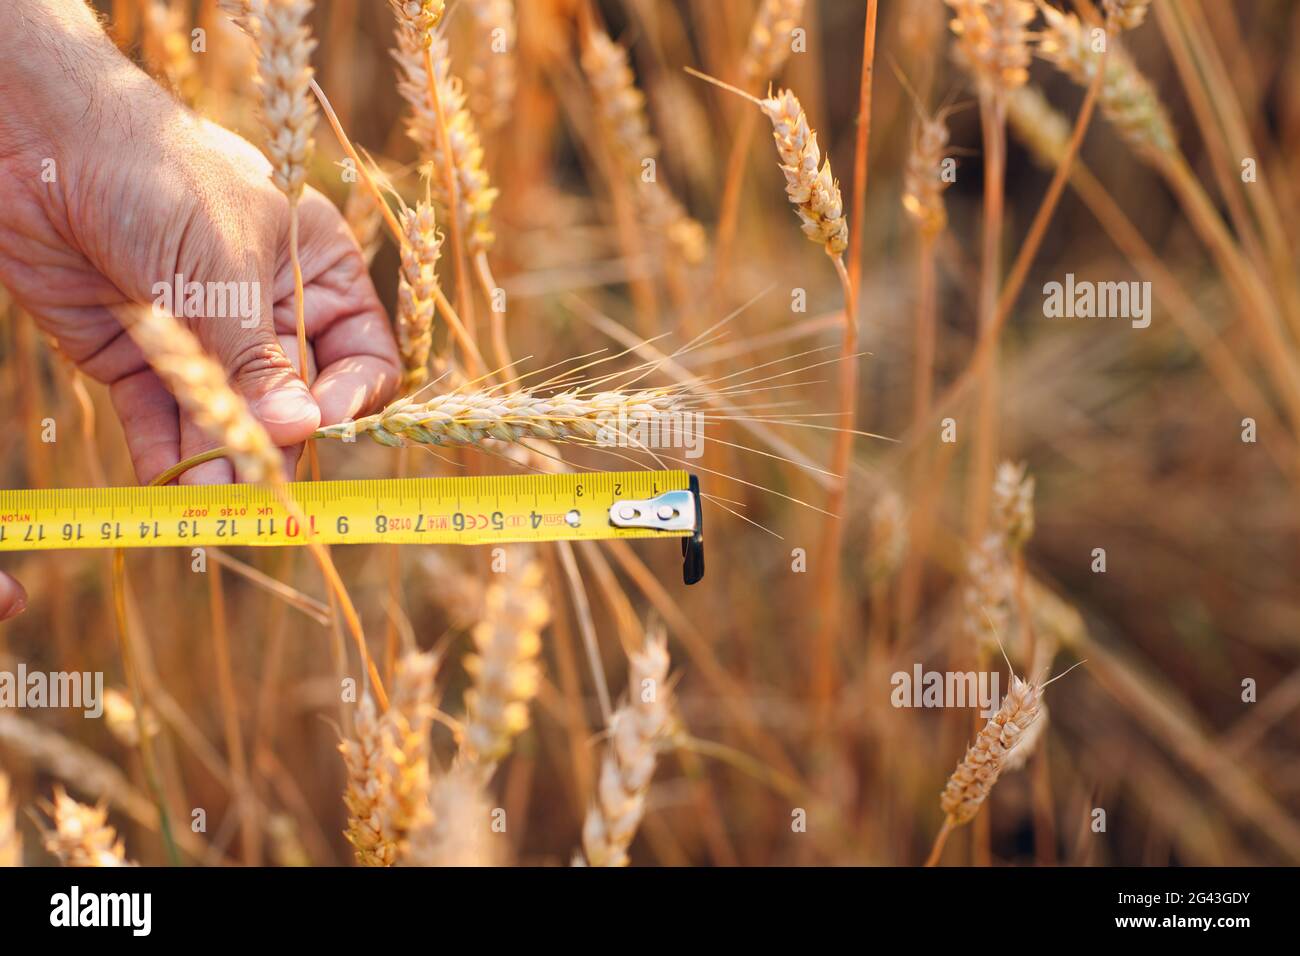 Landwirt untersuchen und messen mit Lineal Weizenohren auf landwirtschaftlichem Feld. Umfassendes Erntekonzept Stockfoto